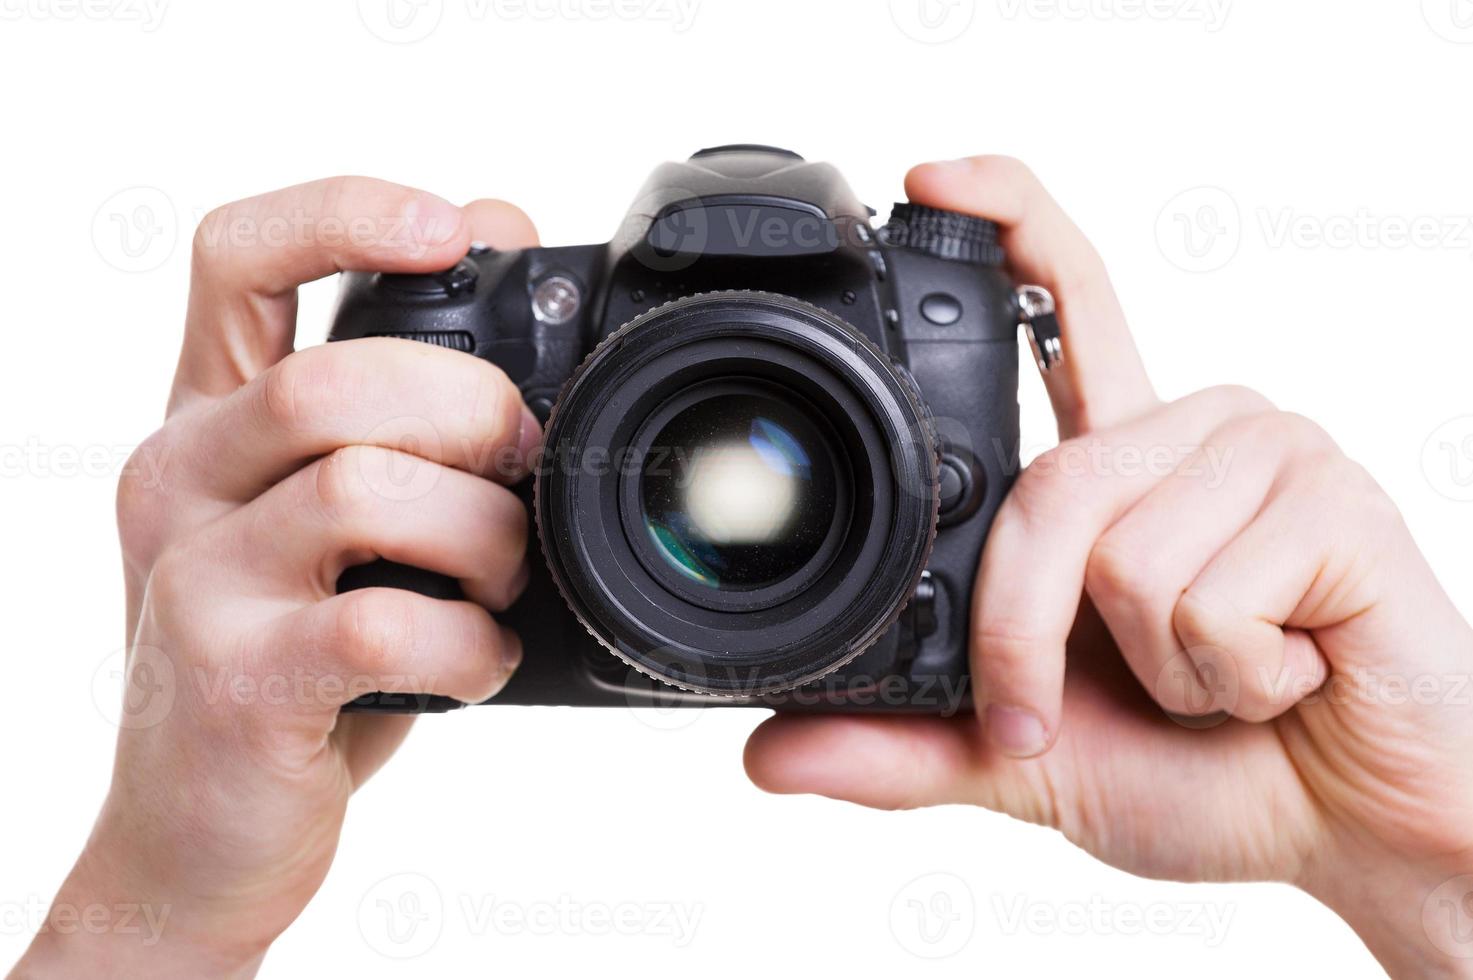 câmera digital. close-up do homem segurando a câmera digital enquanto isolado no branco foto